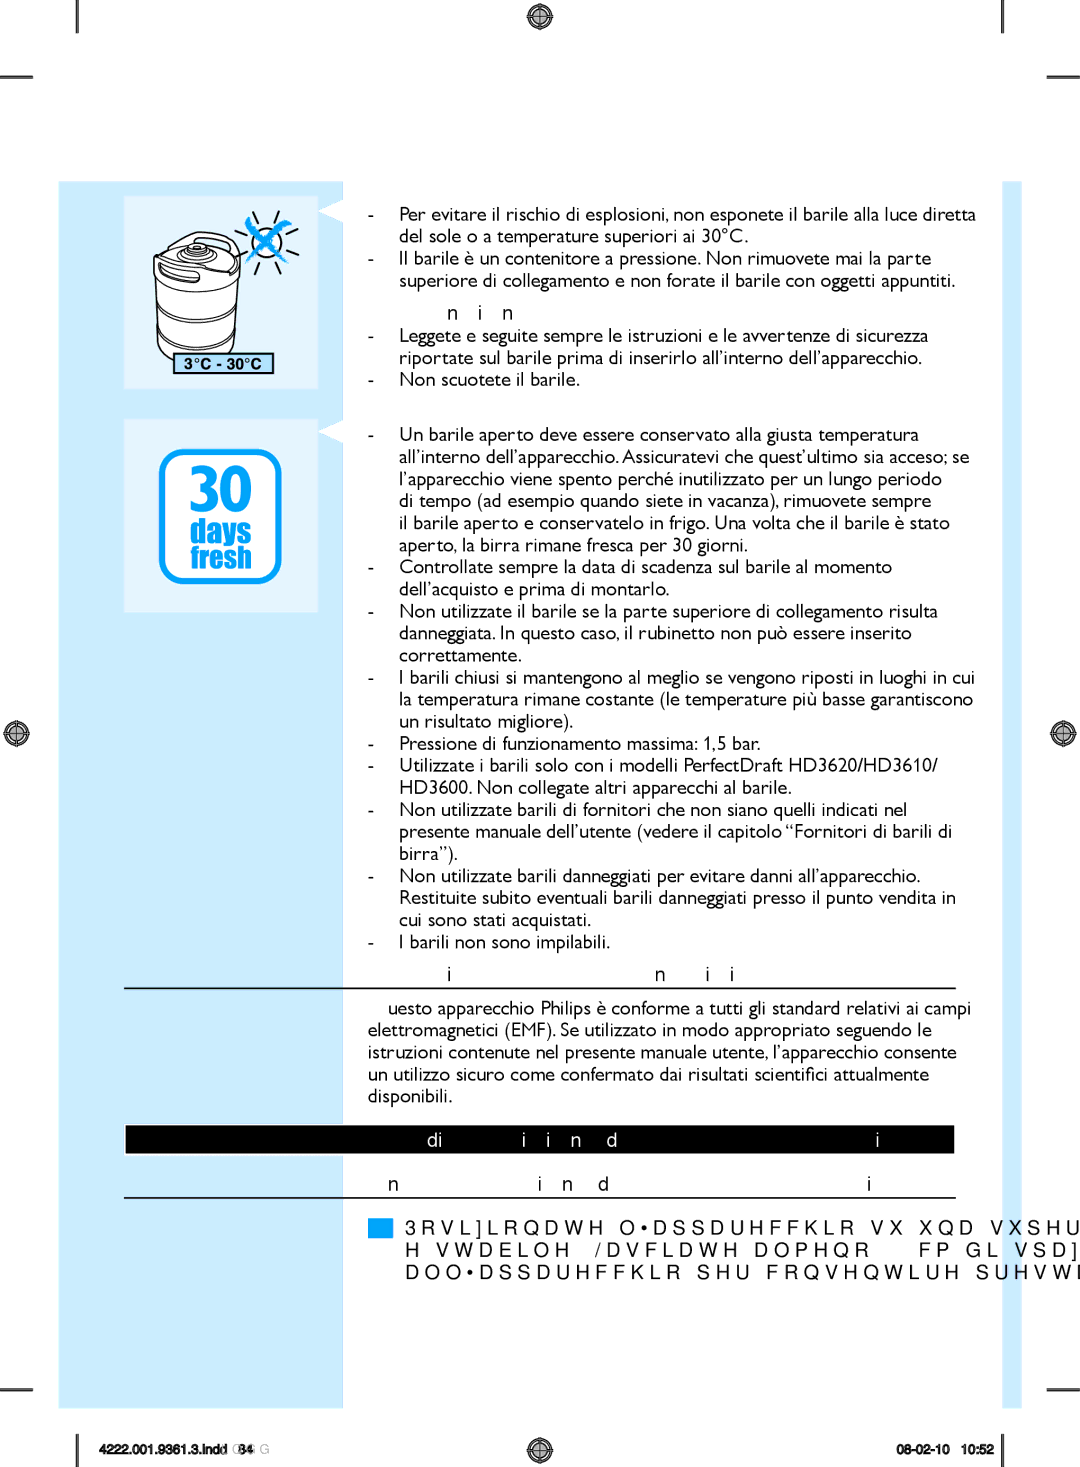 Philips hd3620 manual Non scuotete il barile, Campi elettromagnetici EMF, Predisposizione dell’apparecchio 